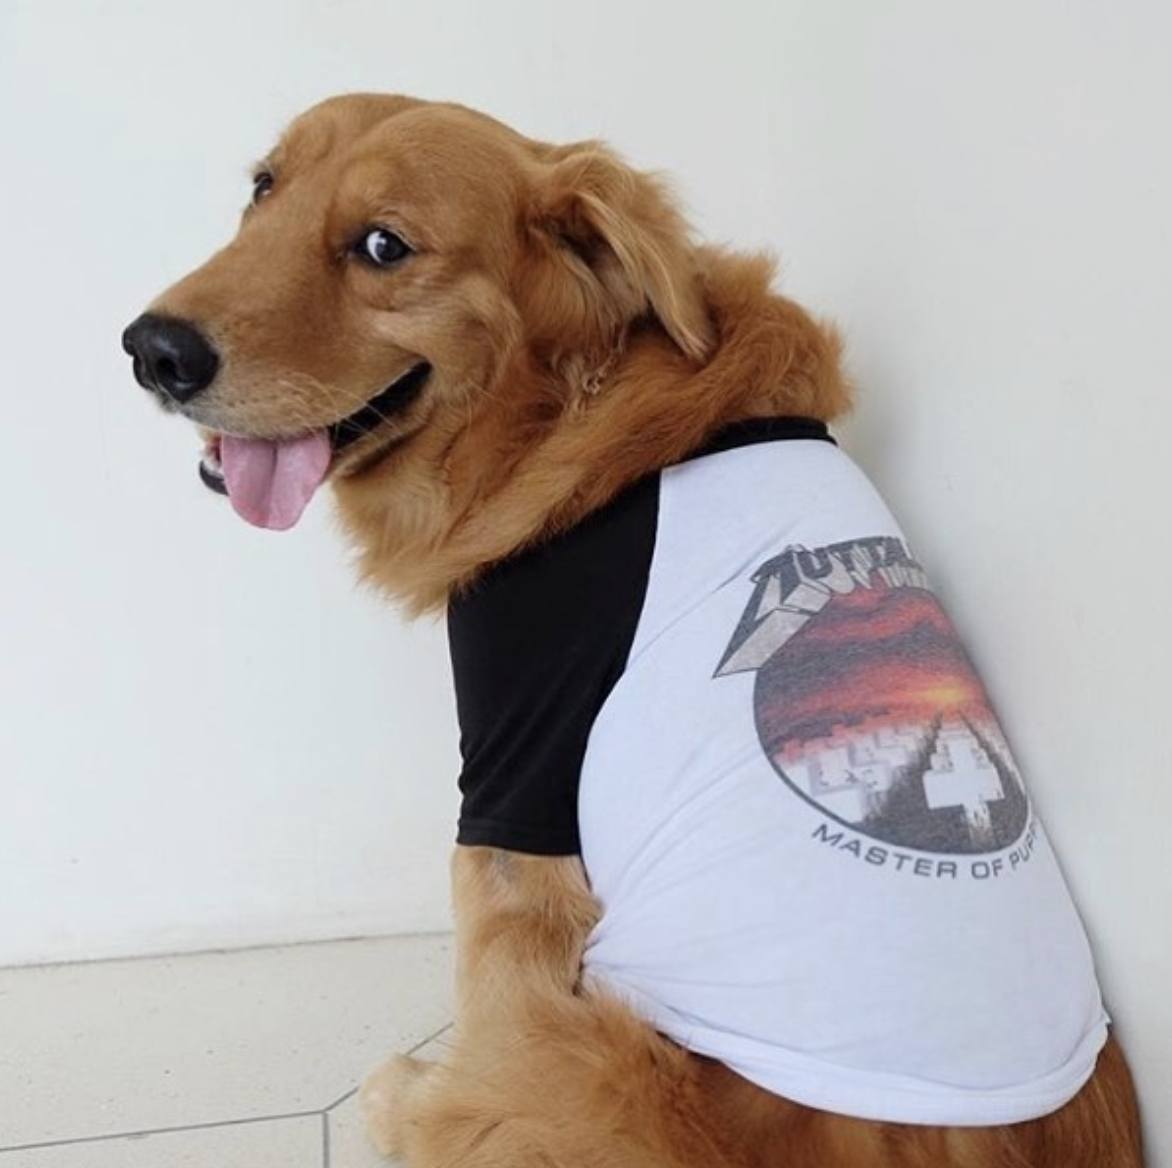 muttallica dog tee, heavy metal dog clothing, metallica dog tee